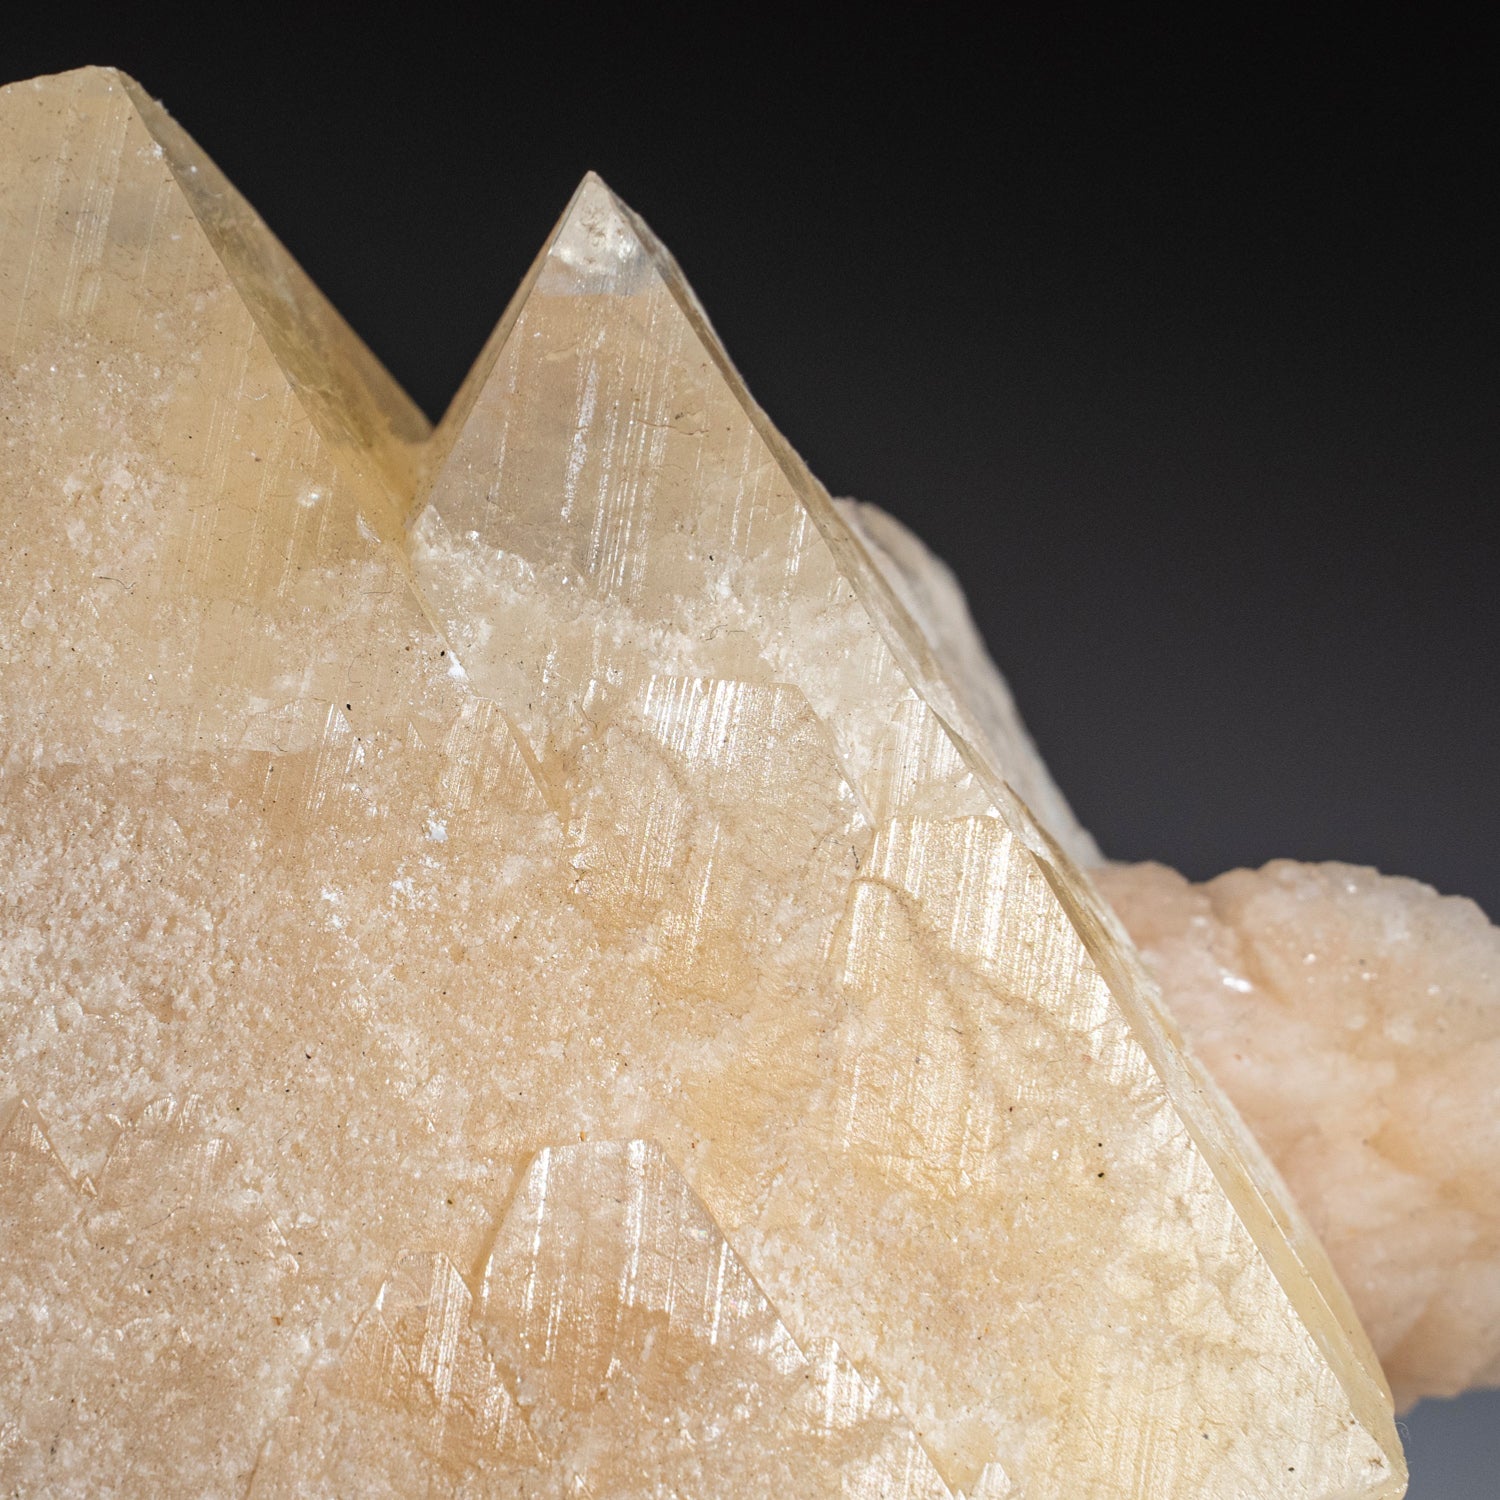 Powellite Crystal on Stilbite From Jalgaon, Maharashtra State, India